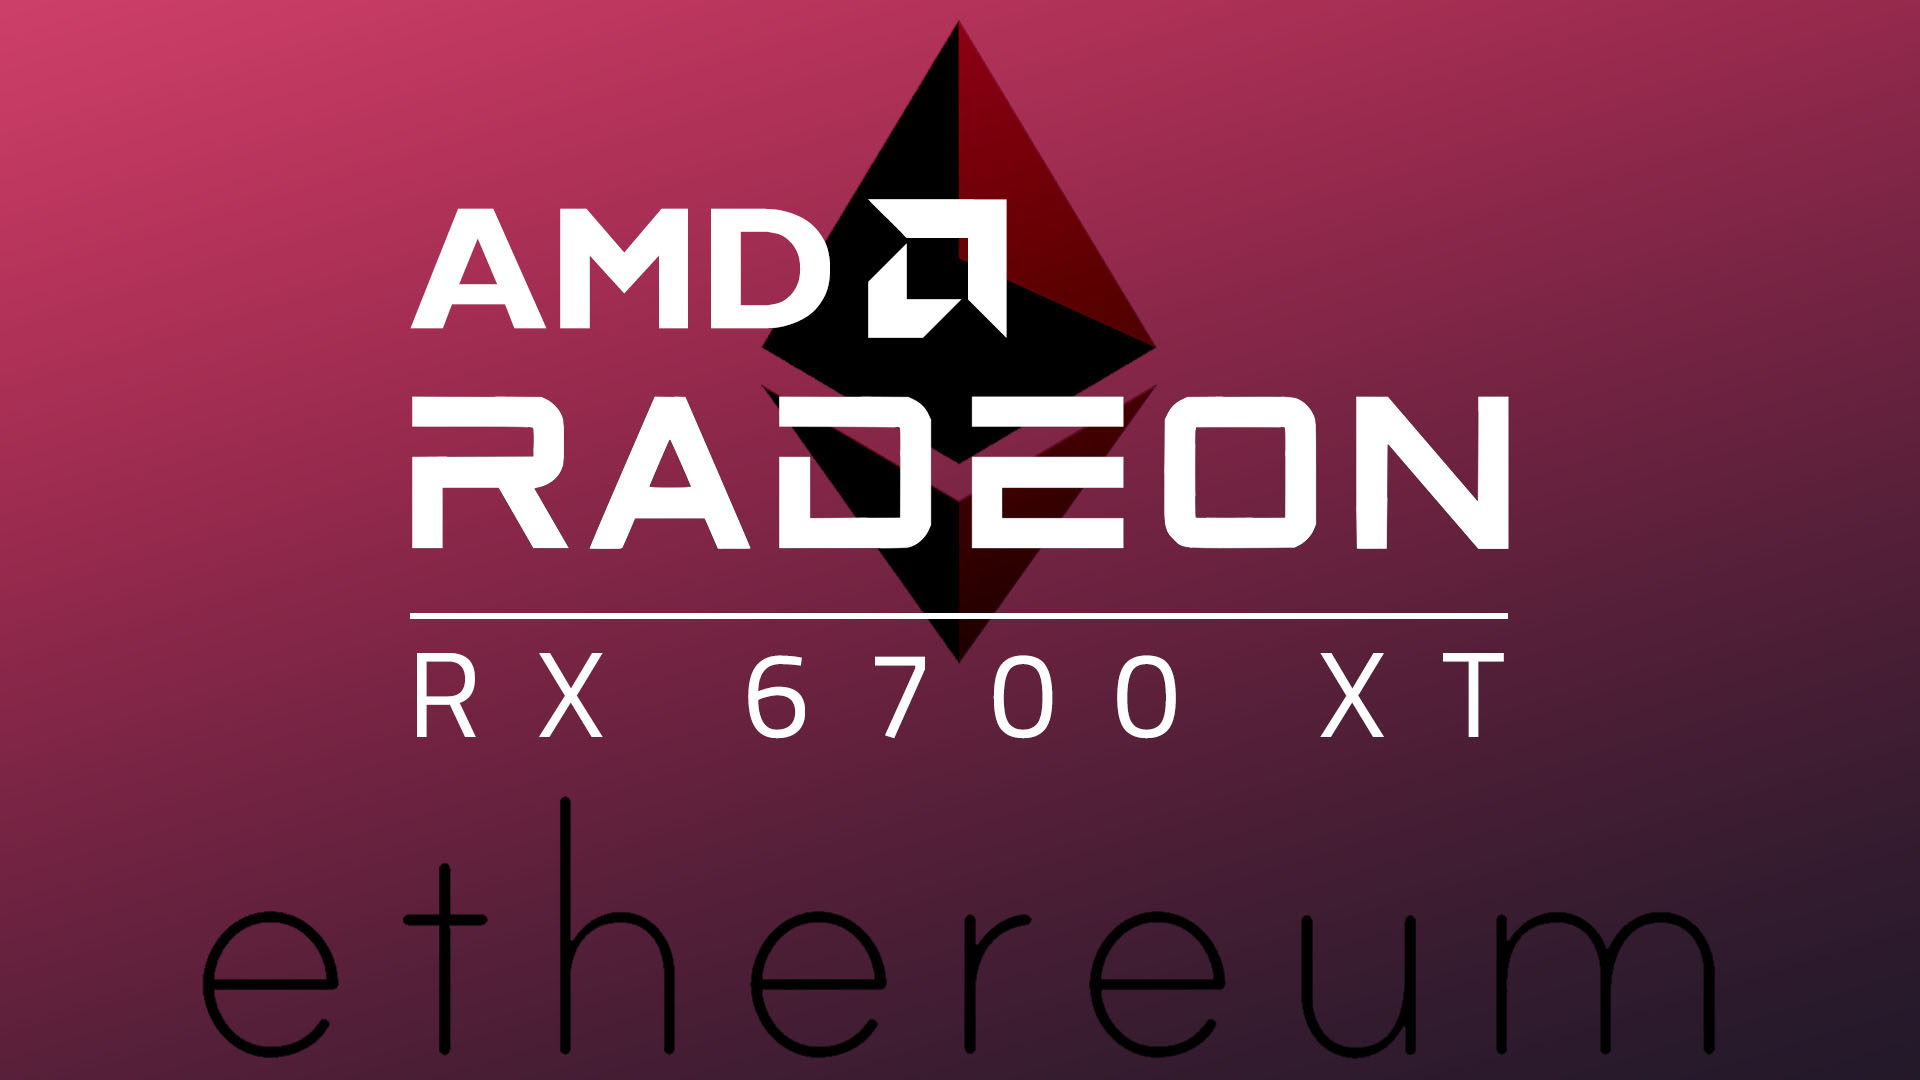 Radeon RX 6700 XTのマイニング性能が判明。RX 5700 XTより低い性能